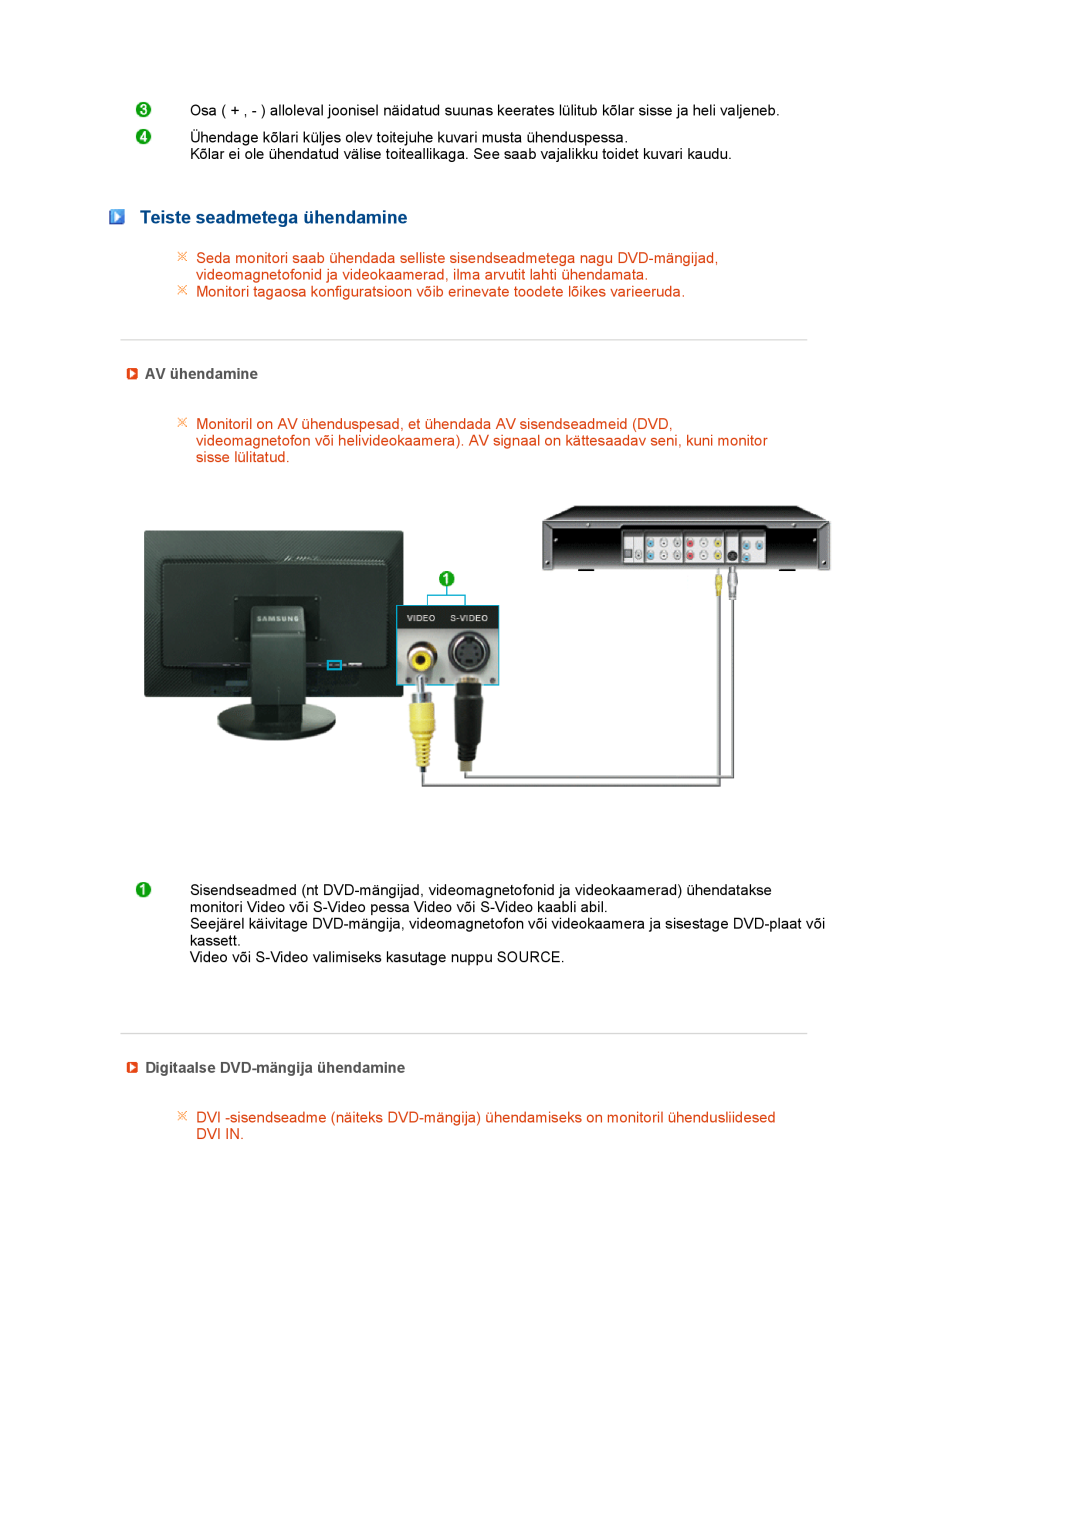 Samsung LS27HUBCB/EDC manual Teiste seadmetega ühendamine, AV ühendamine, Digitaalse DVD-mängija ühendamine, Dvi In 